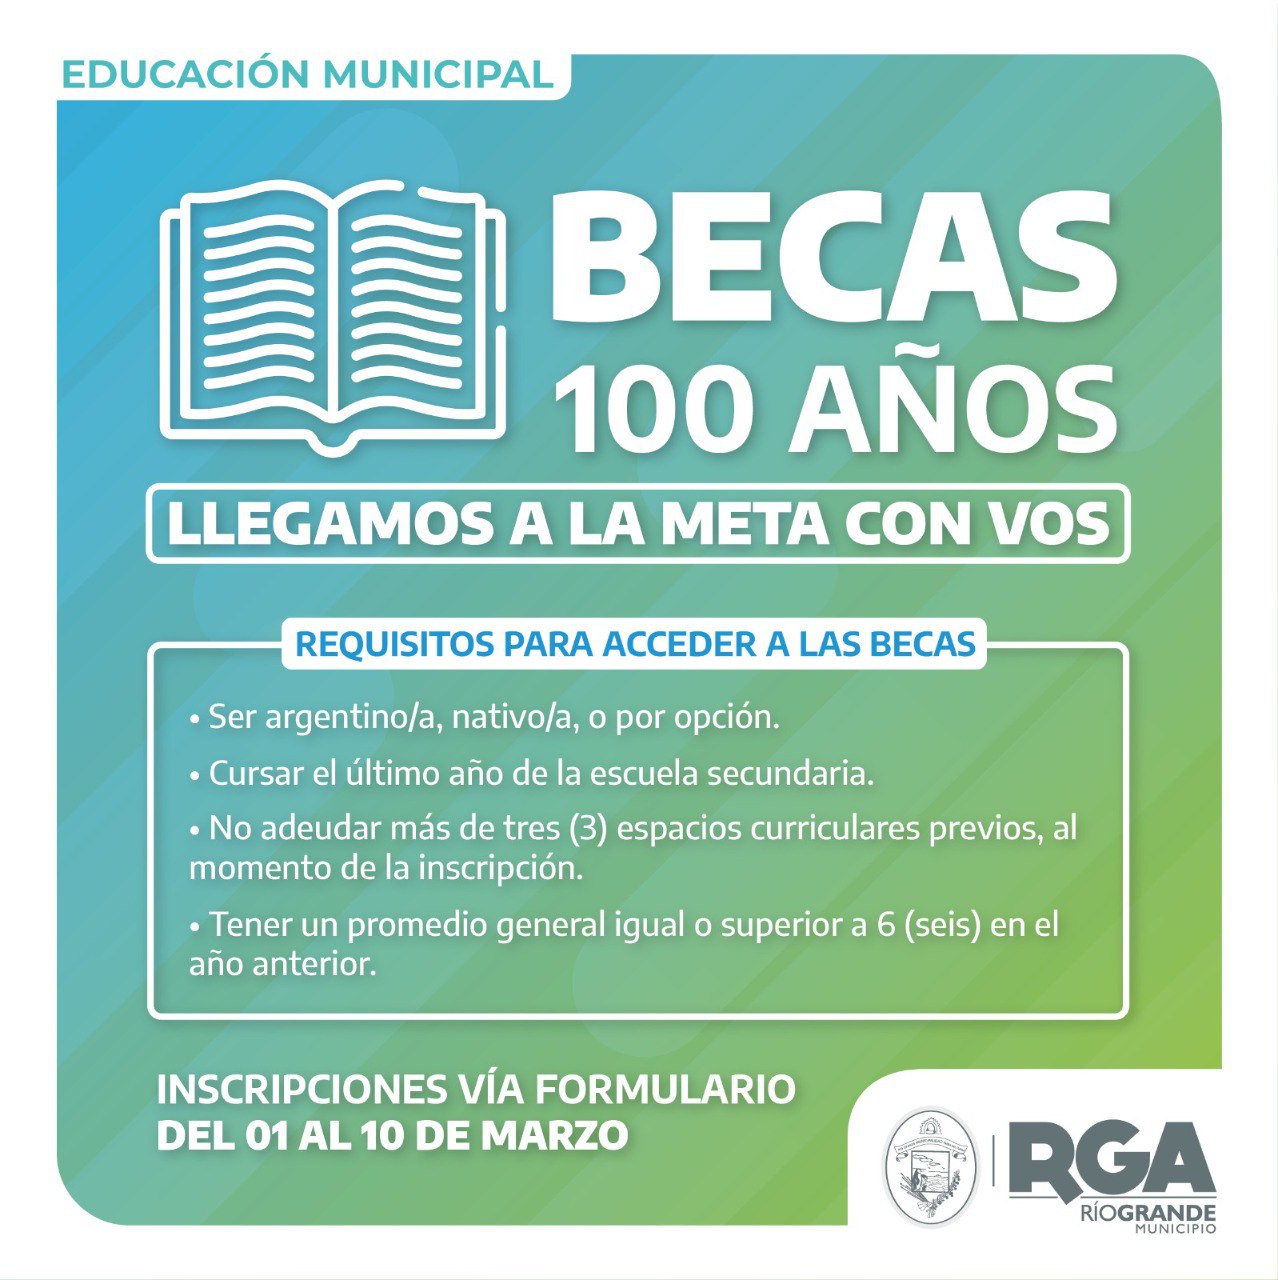 Inscripciones abiertas para las "Becas RGA" y "Becas 100 Años"